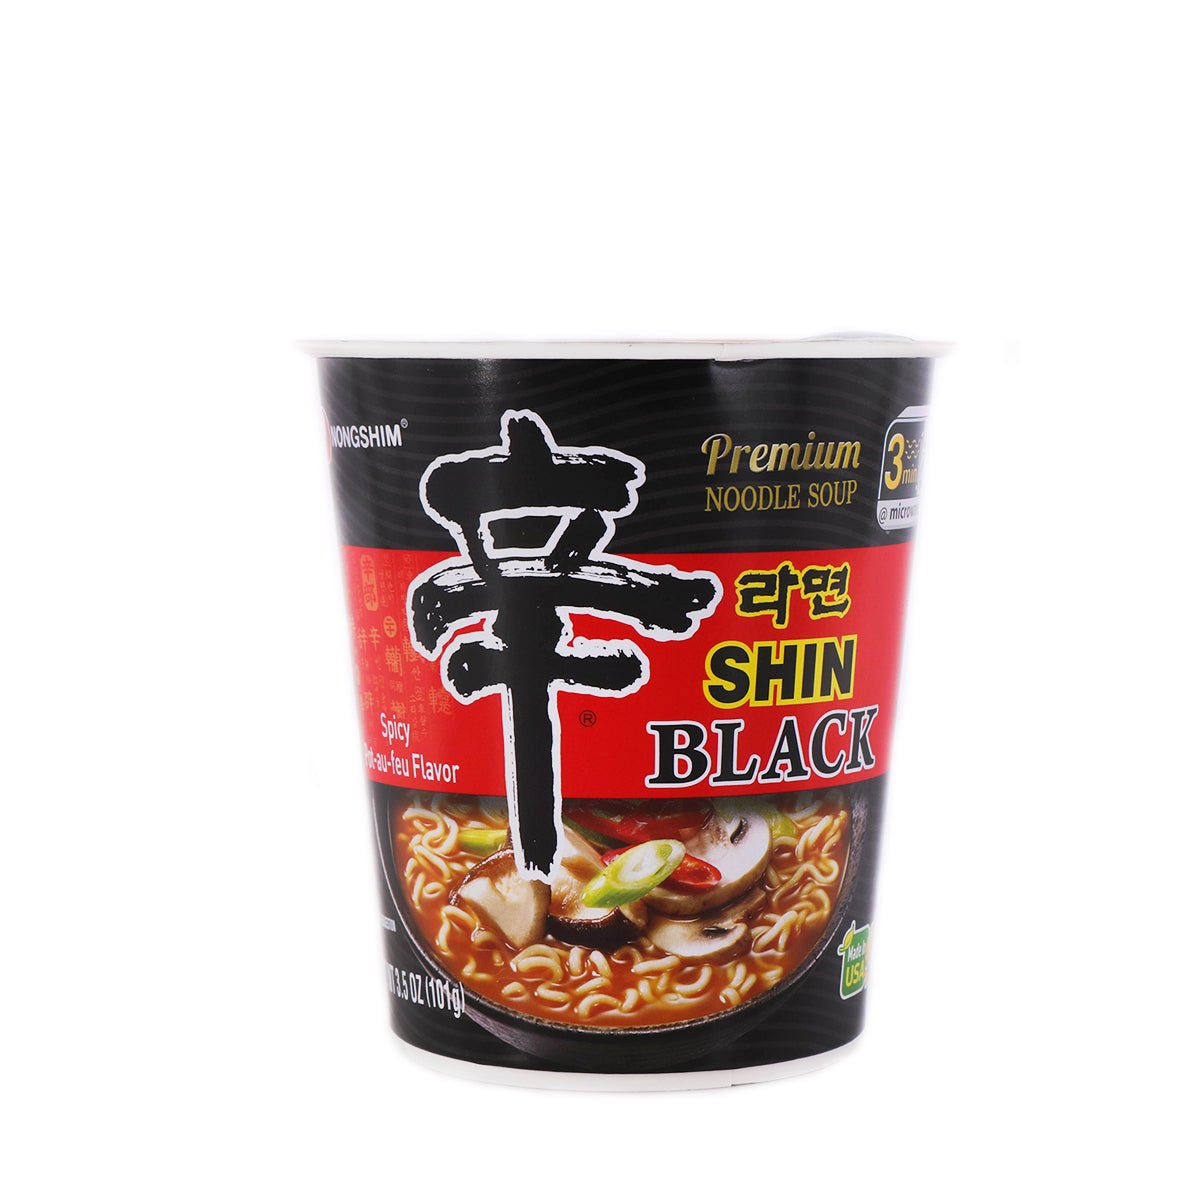 Nongshim, Udon Noodle Soup Bowl, 9.73 oz, 6-Count